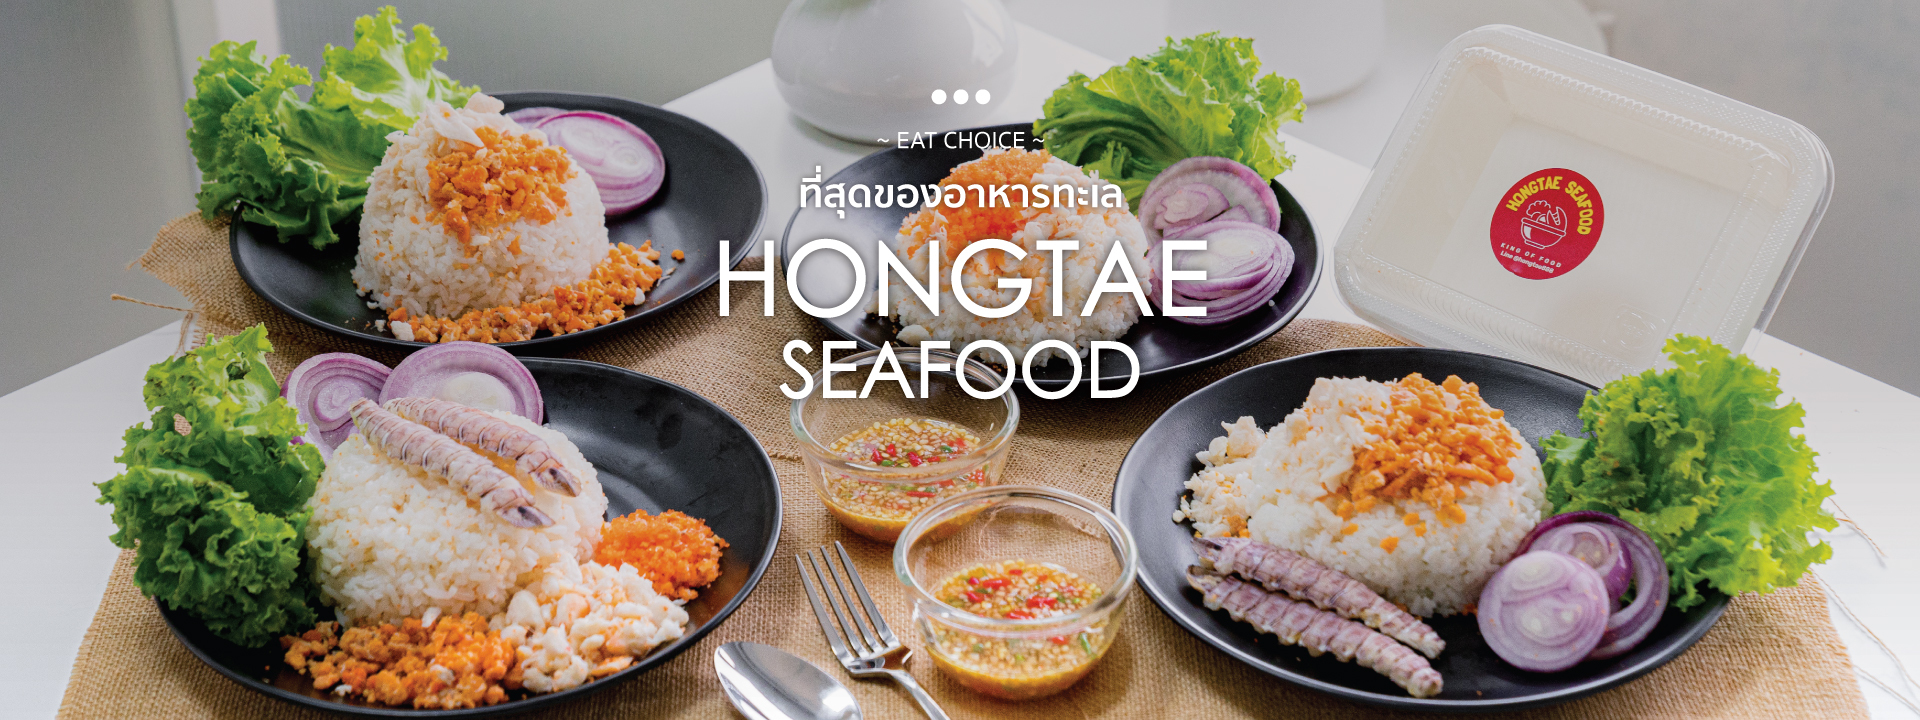 ที่สุดของอาหารทะเล “Hongtae Seafood”